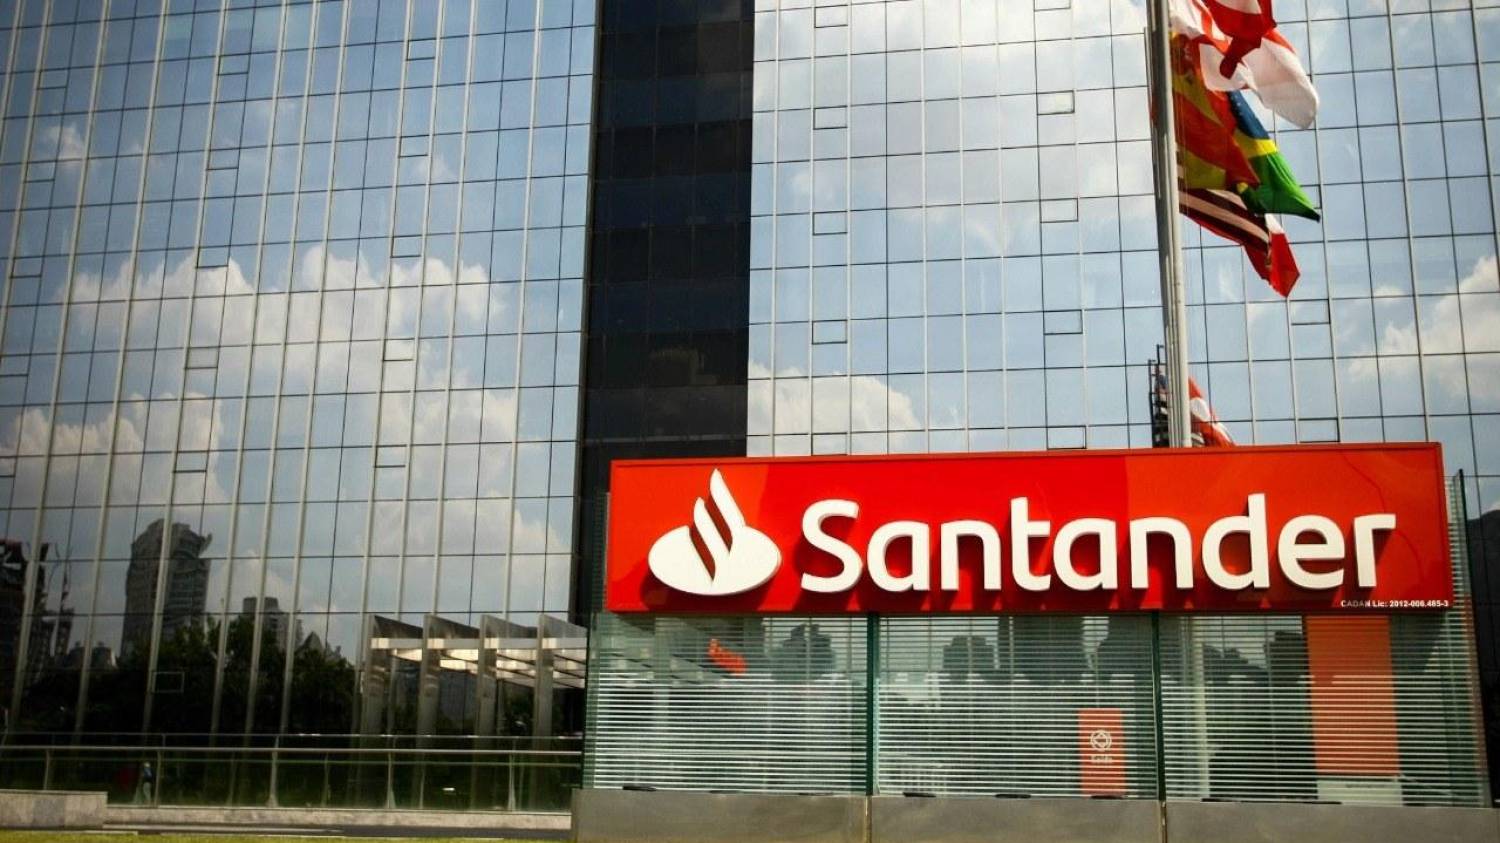 Santander cobra juros dos trabalhadores adoentados e afastados